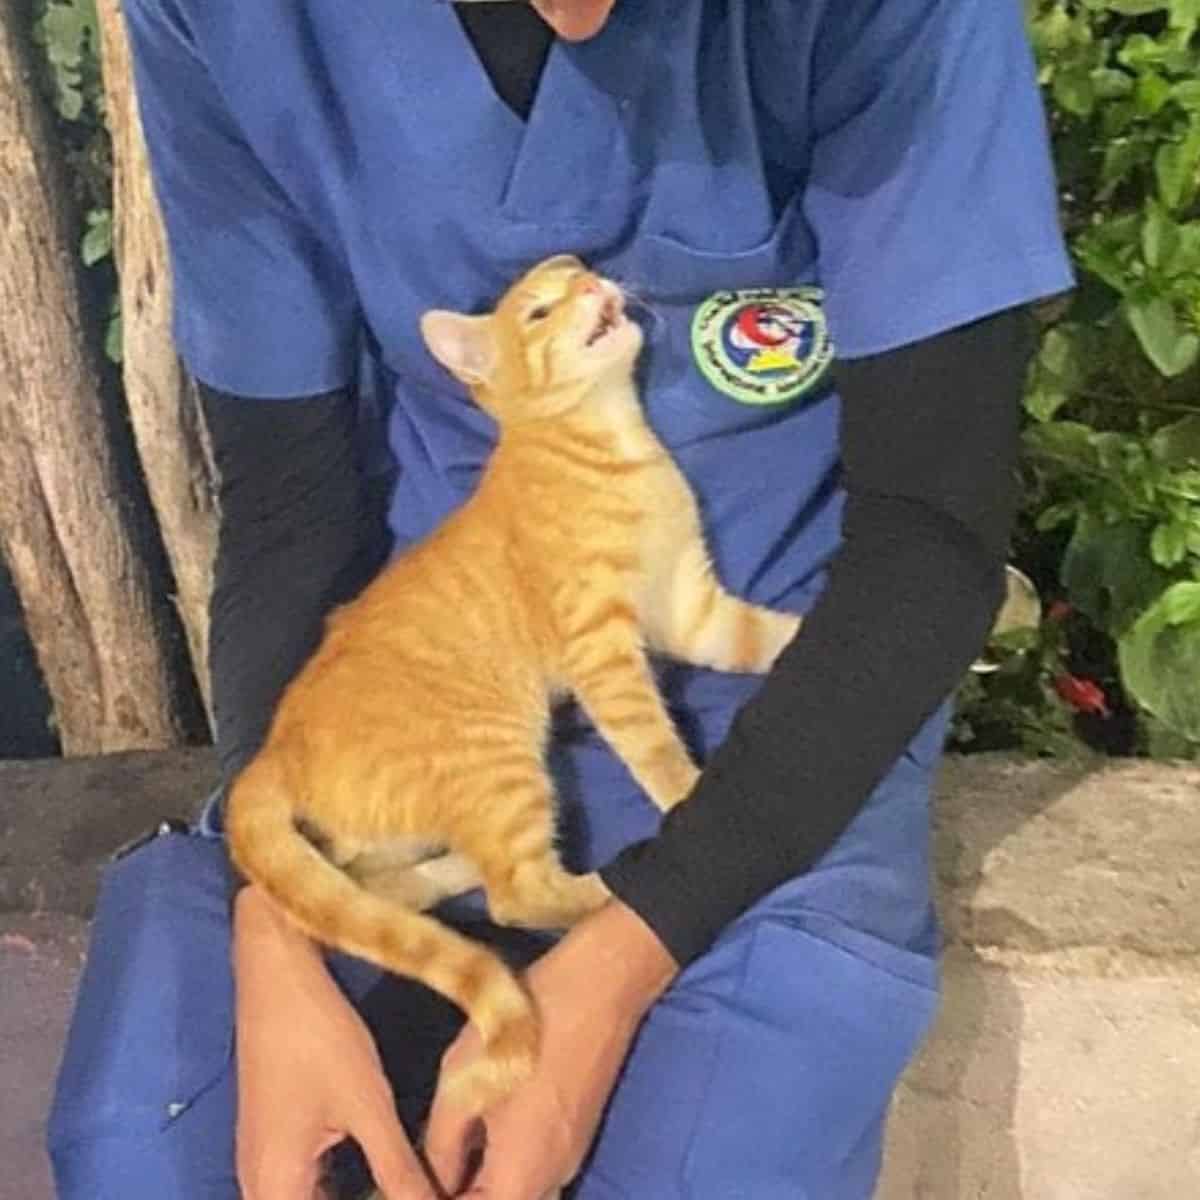 Nurse holding a cat